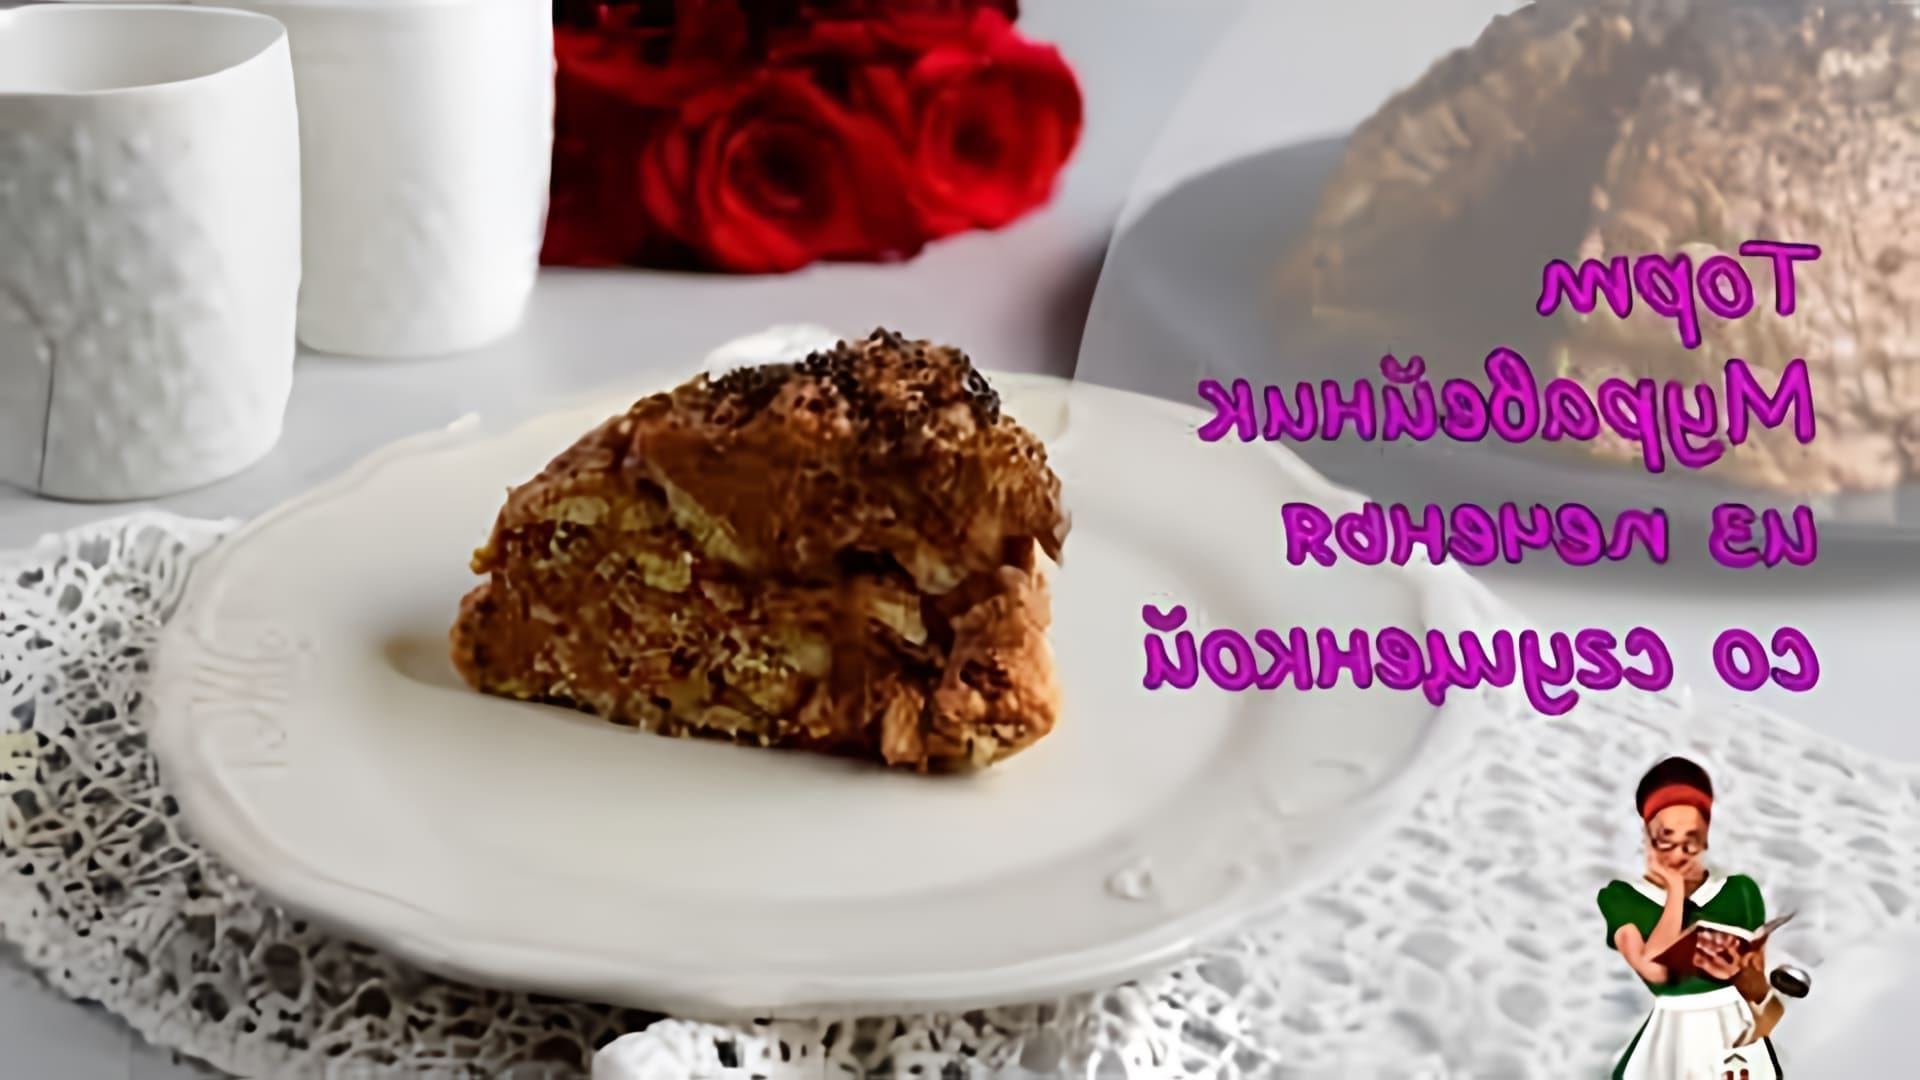 В этом видео демонстрируется рецепт приготовления торта "Муравейник" из печенья со сгущенкой